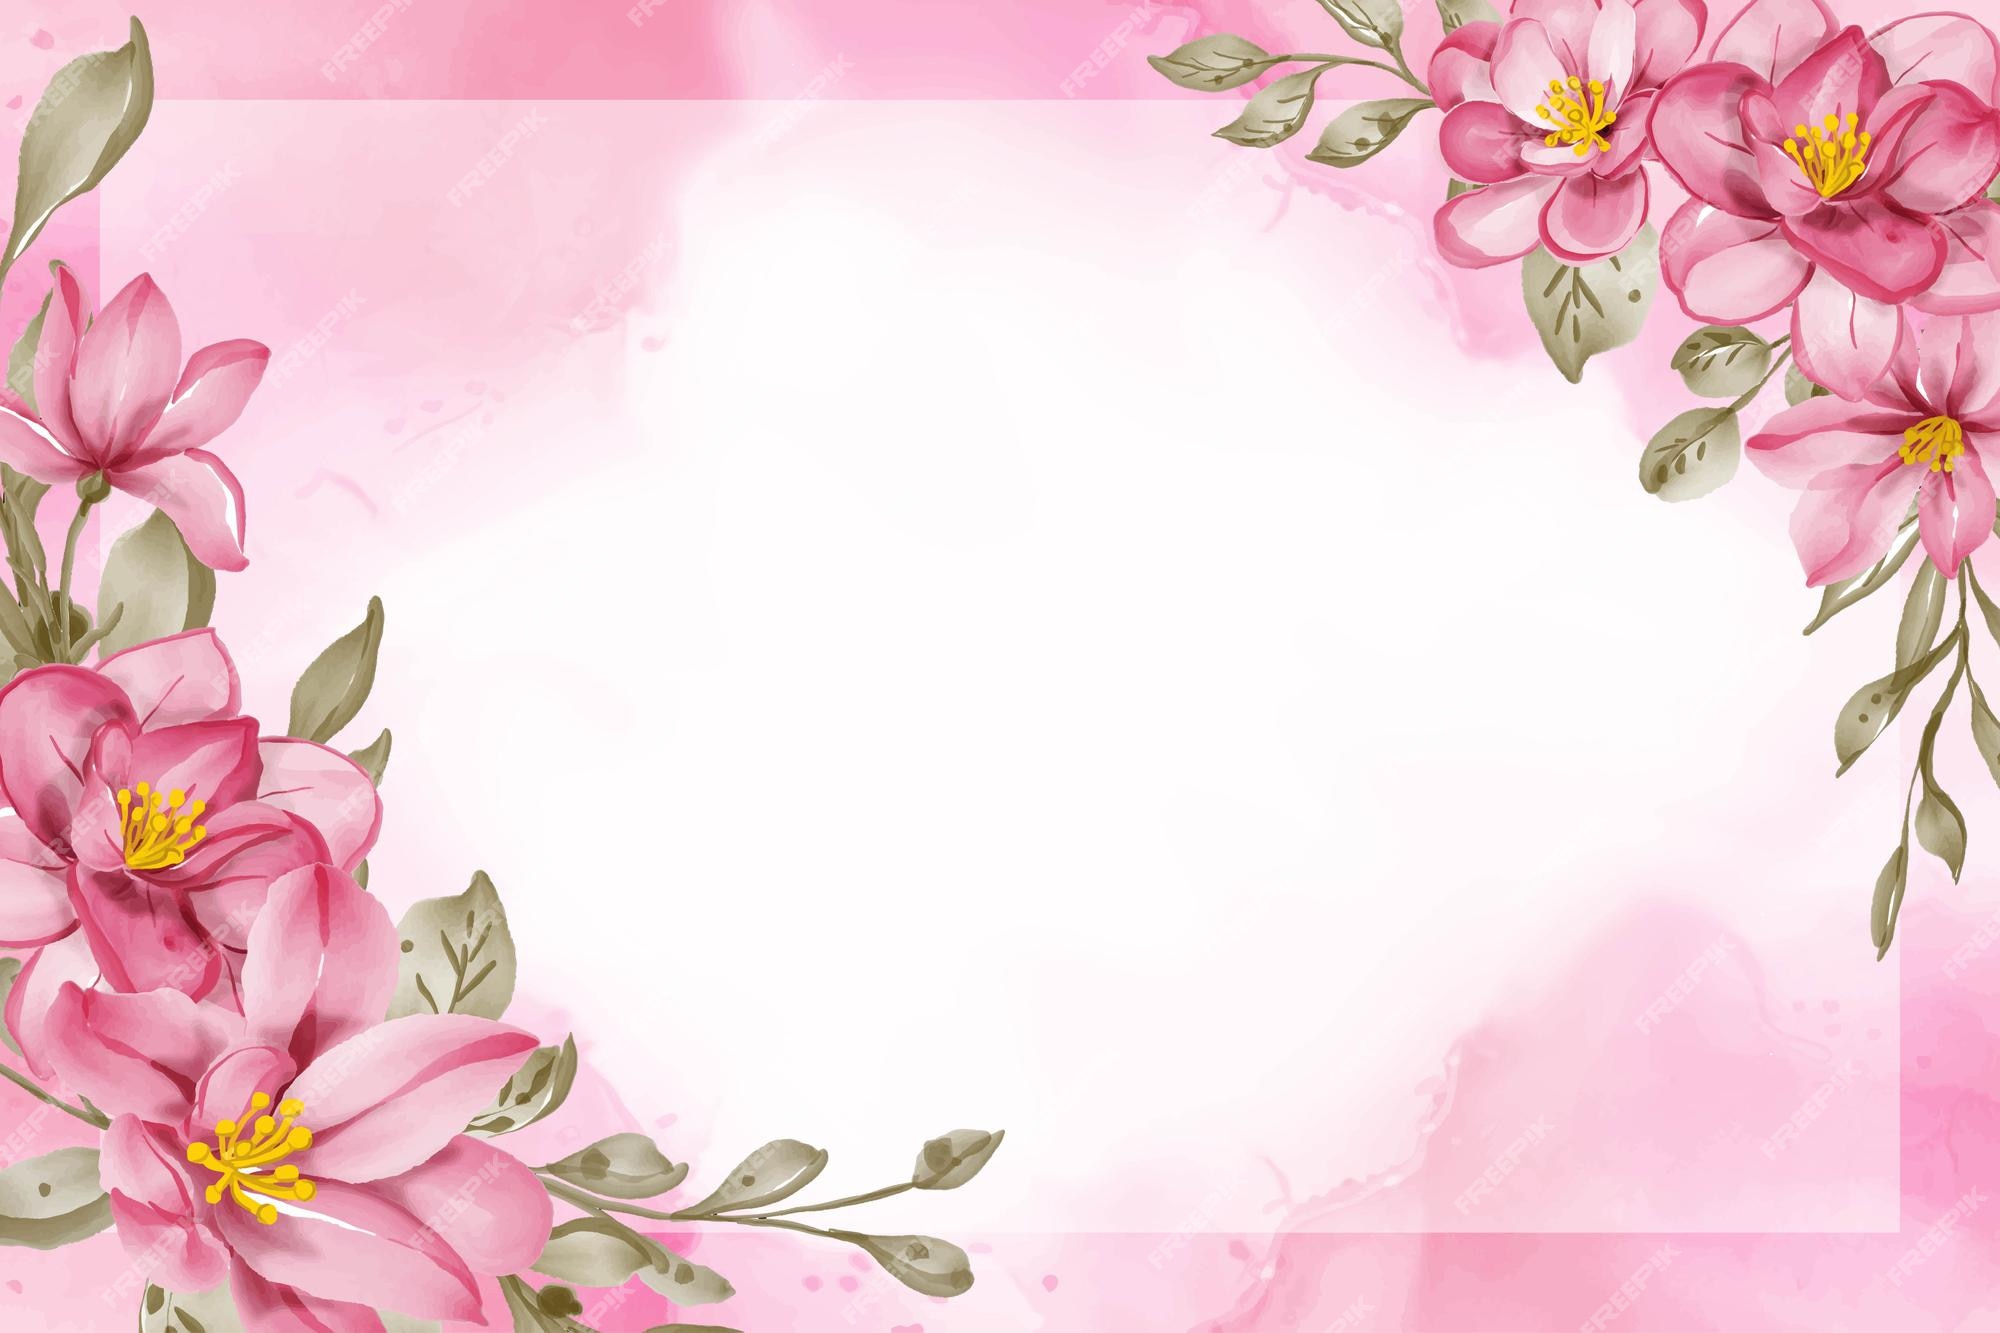 Hoa hồng màu hồng - Tận hưởng vẻ đẹp quyến rũ của hoa hồng màu hồng, cùng ngắm nhìn những cánh hoa mềm mại, đầy tình yêu thương trong bức ảnh. Hãy thưởng thức sự tinh tế của màu hồng và hương thơm dịu nhẹ của hoa.